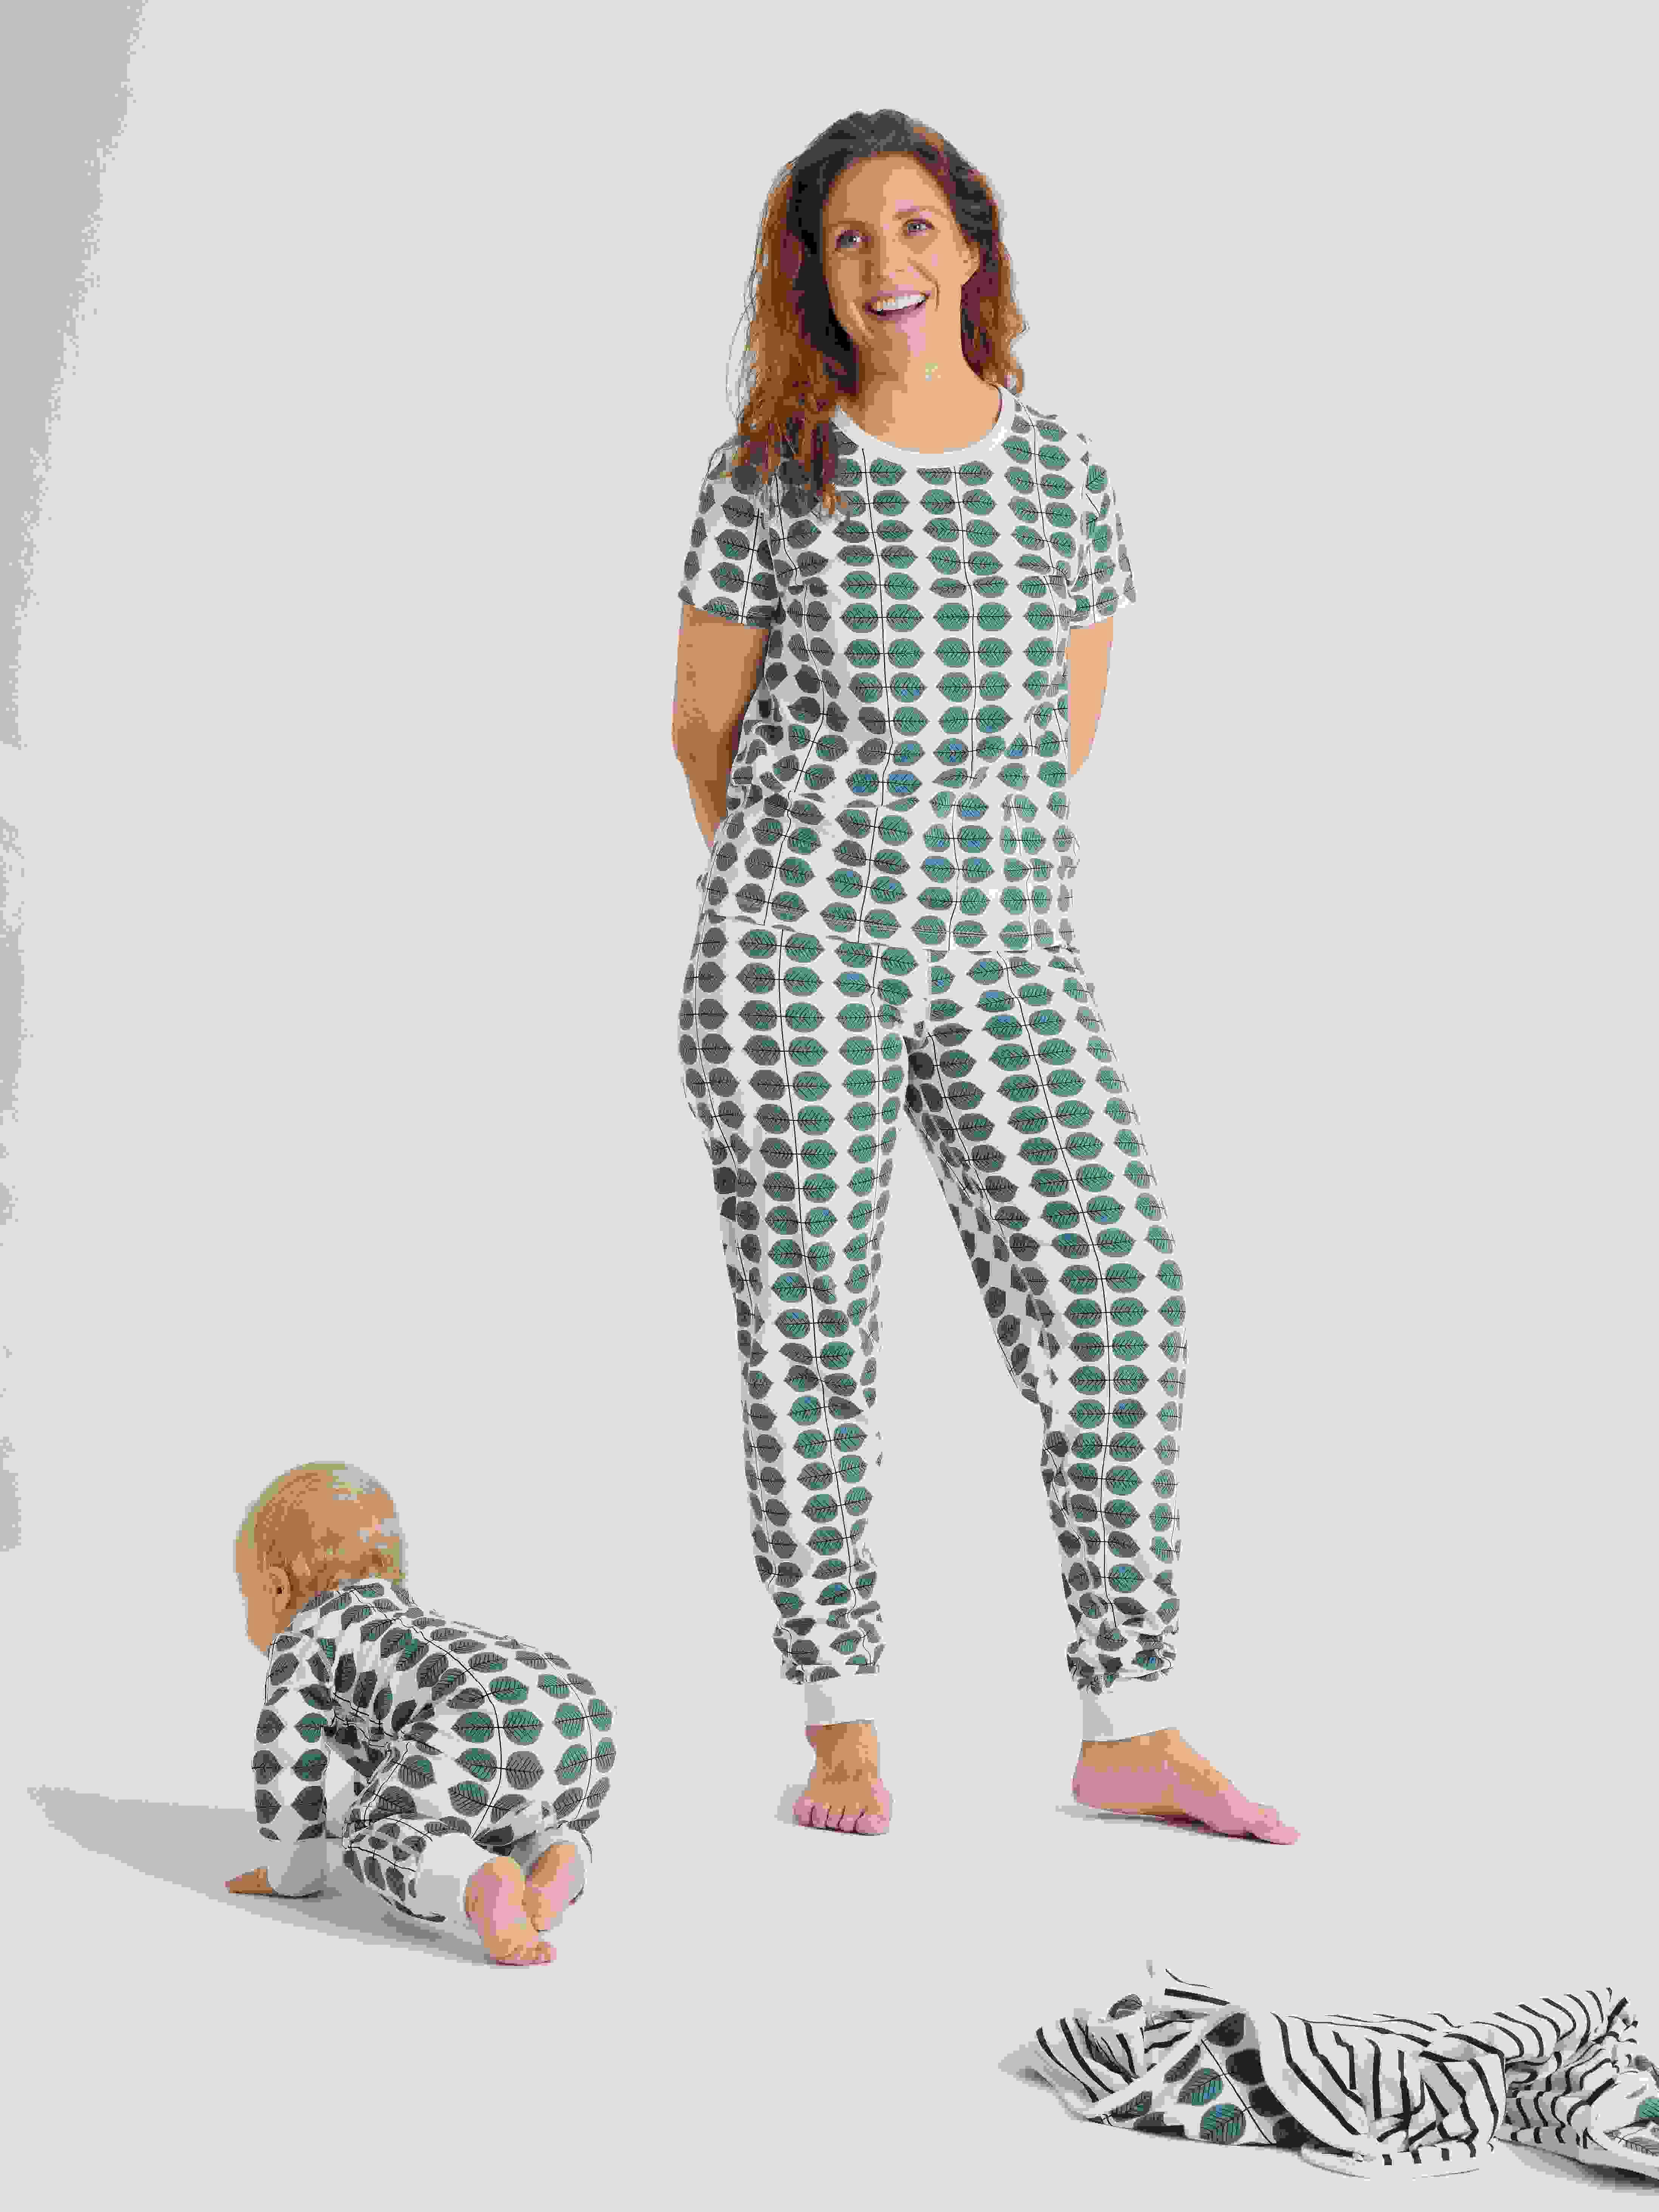 Kurzärmliger Schlafanzug für Erwachsene, Berså-Motiv